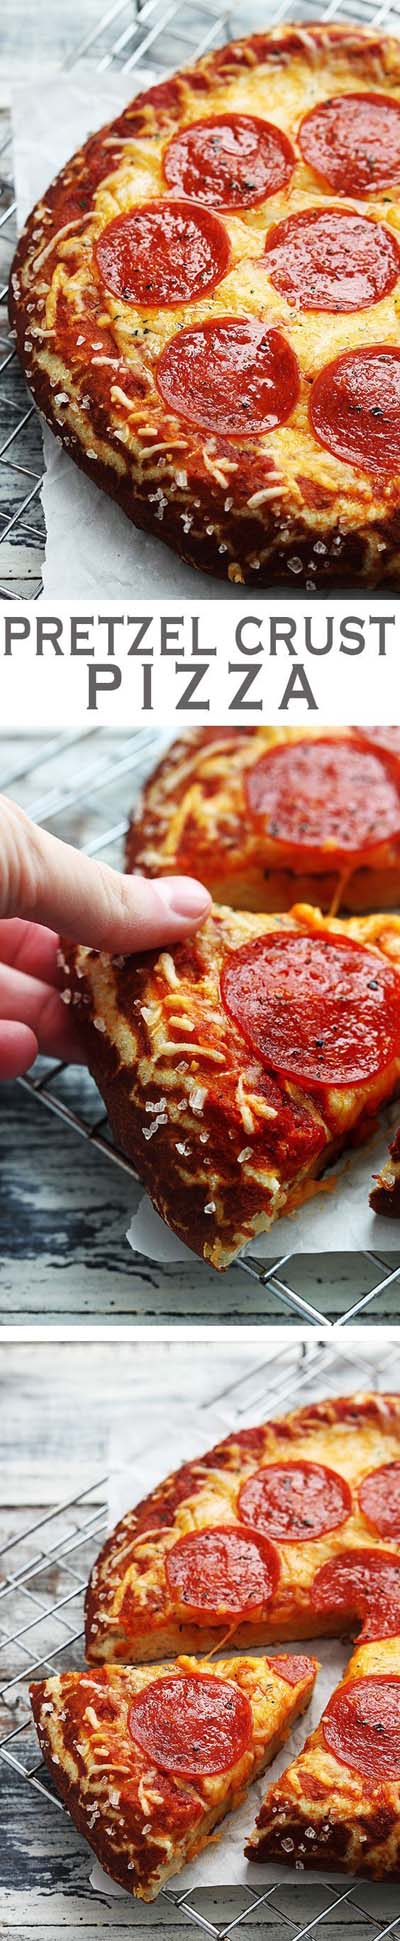 35 Homemade Pizza Recipes: Pretzel Crust Pizza